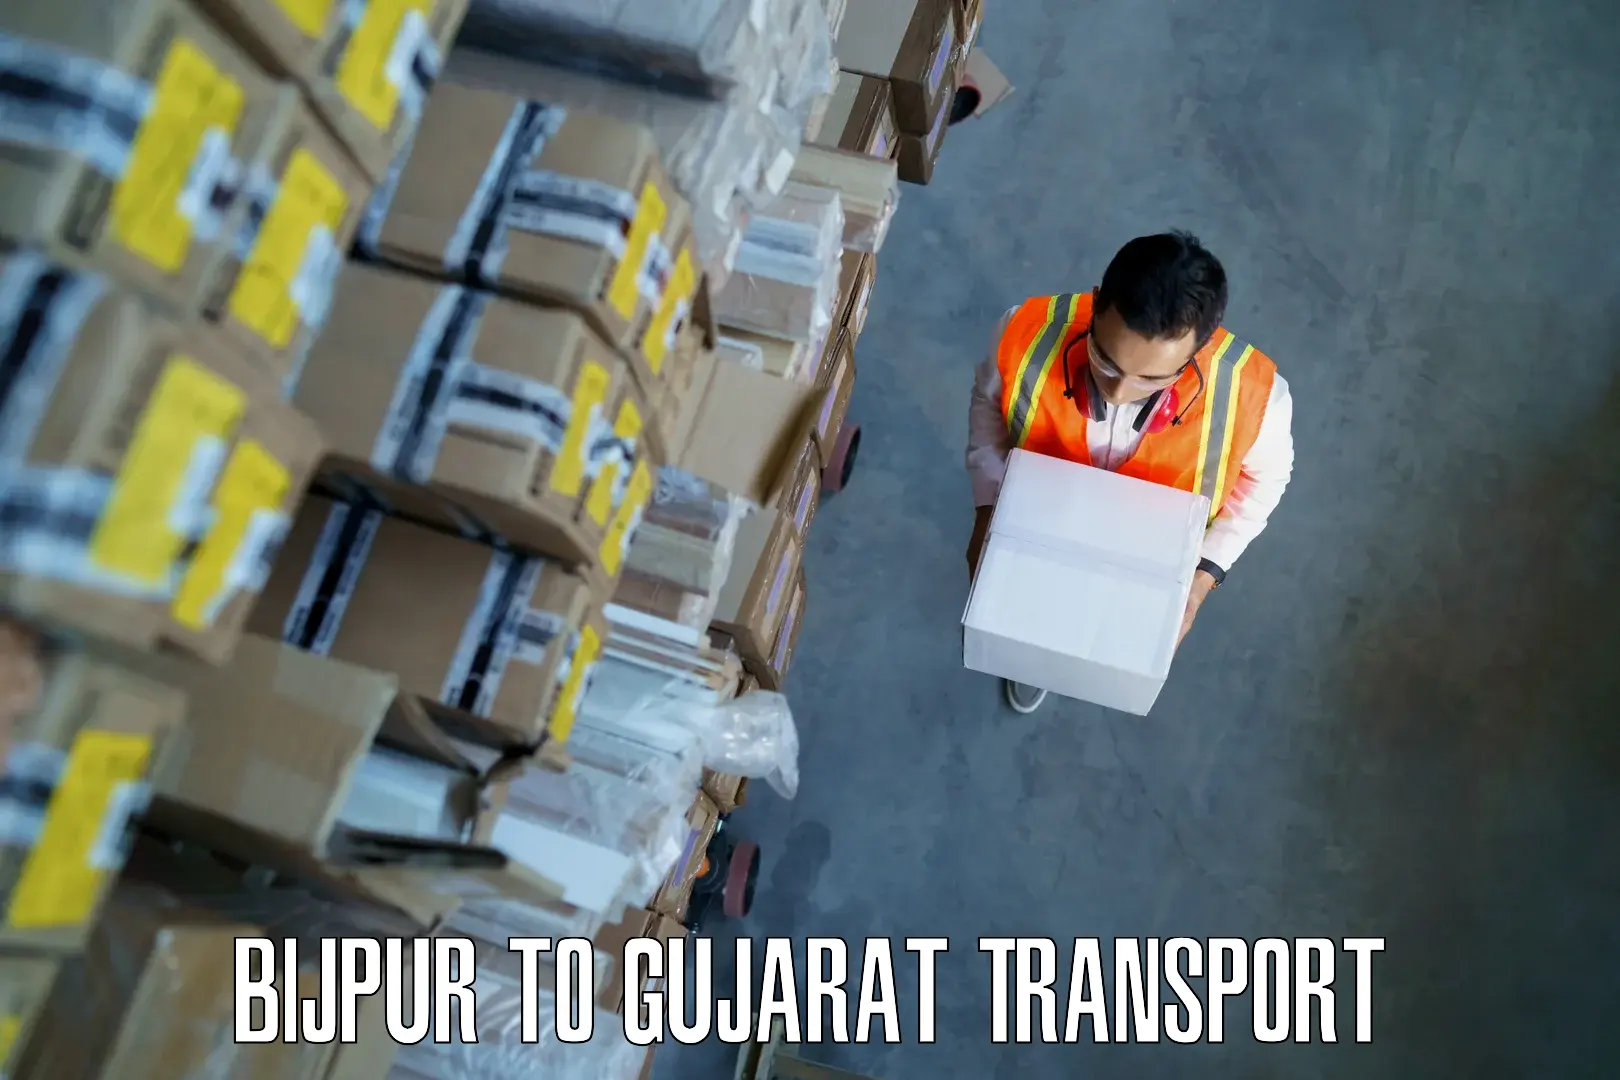 Furniture transport service Bijpur to Rajpipla